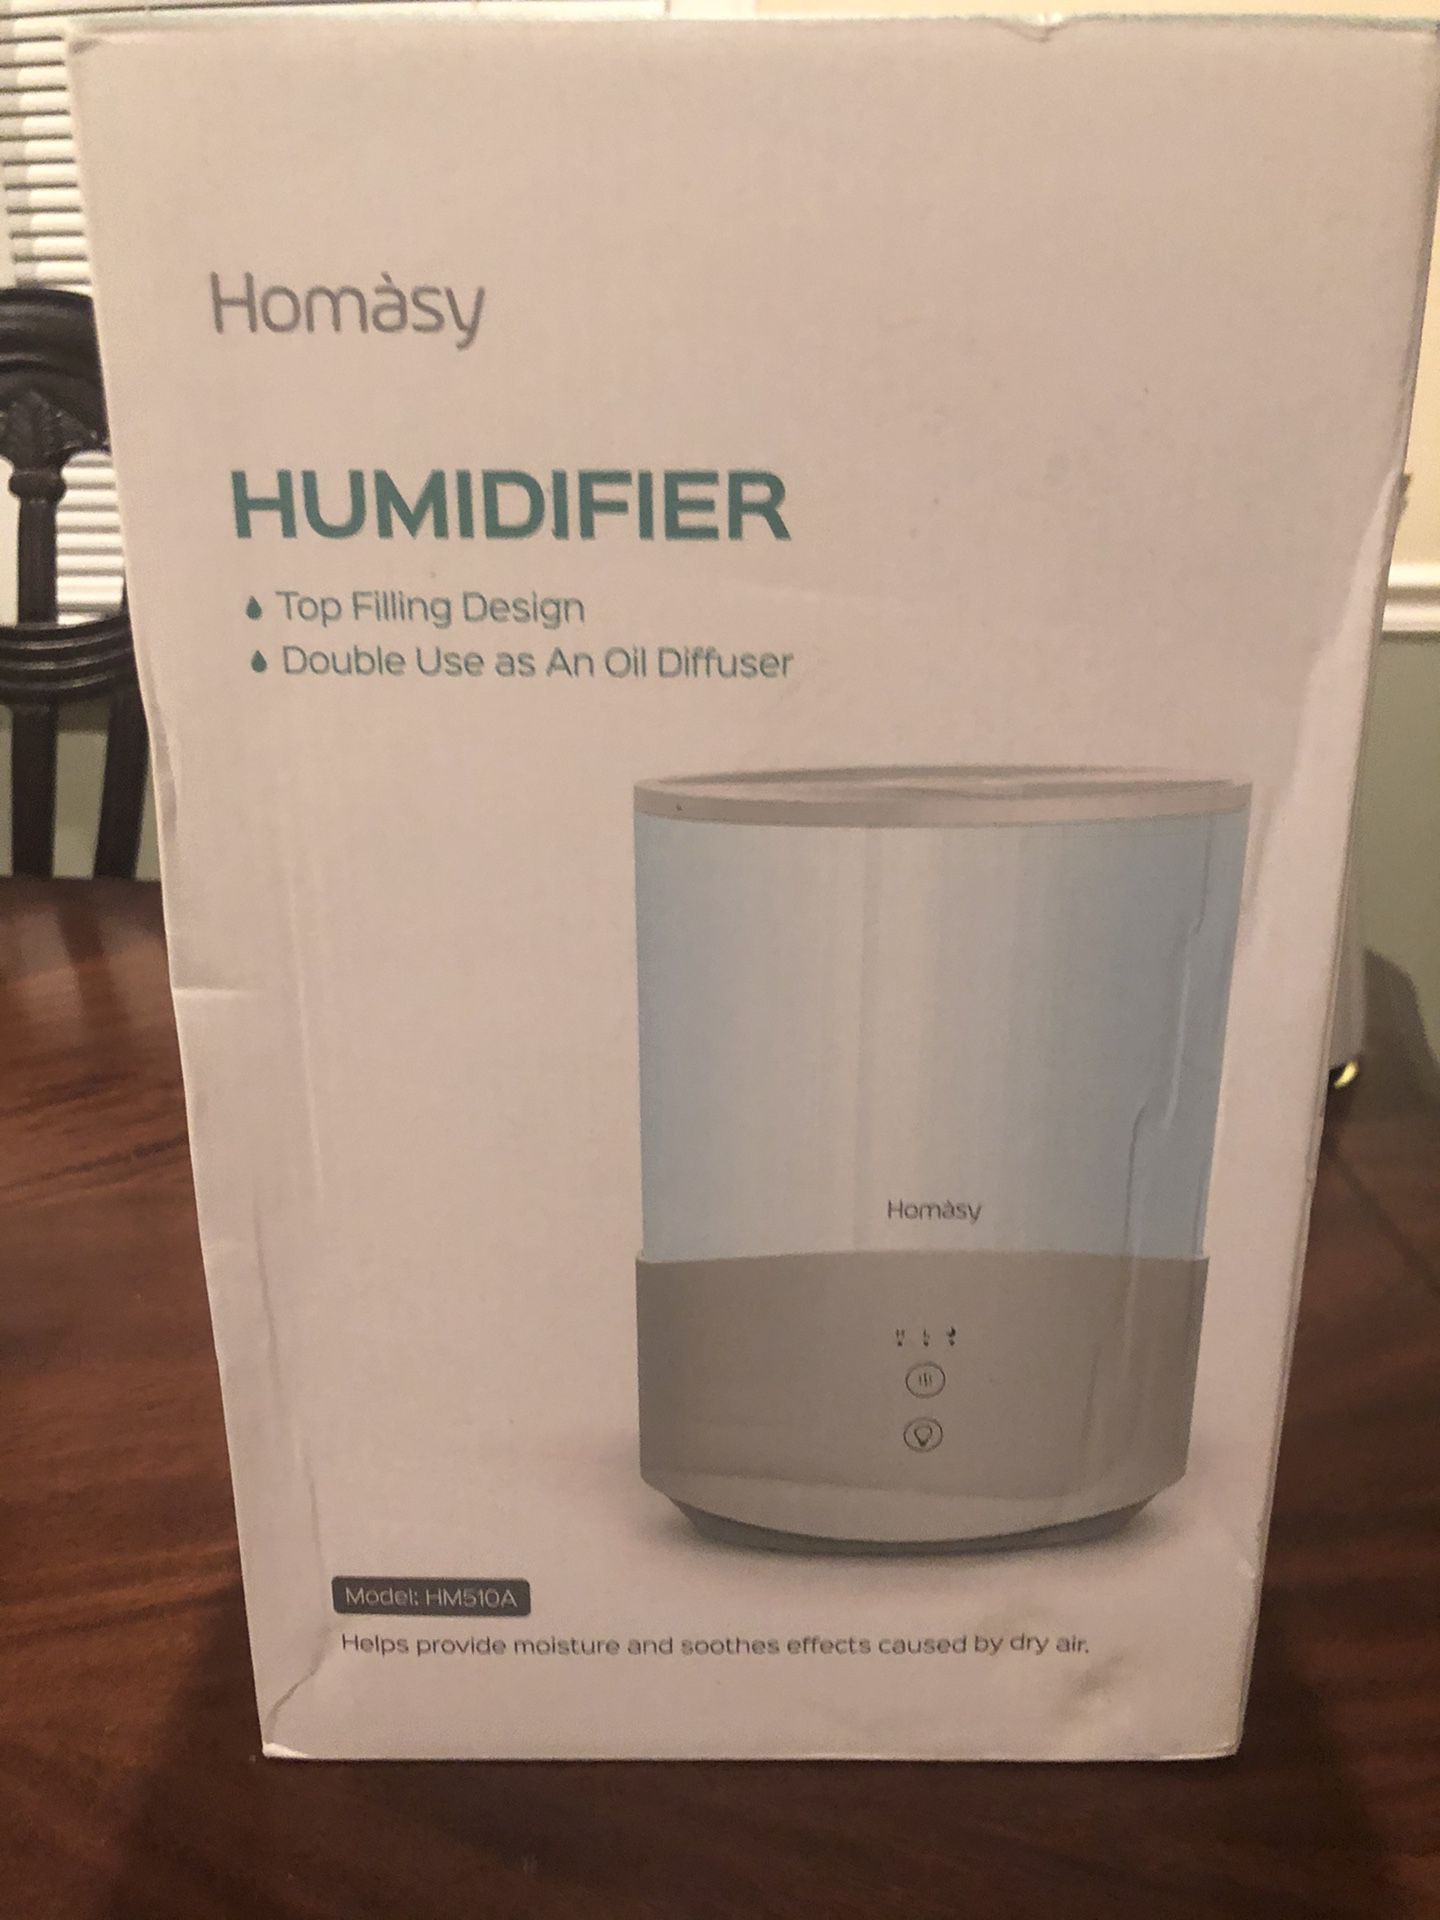 Homasy humidifier